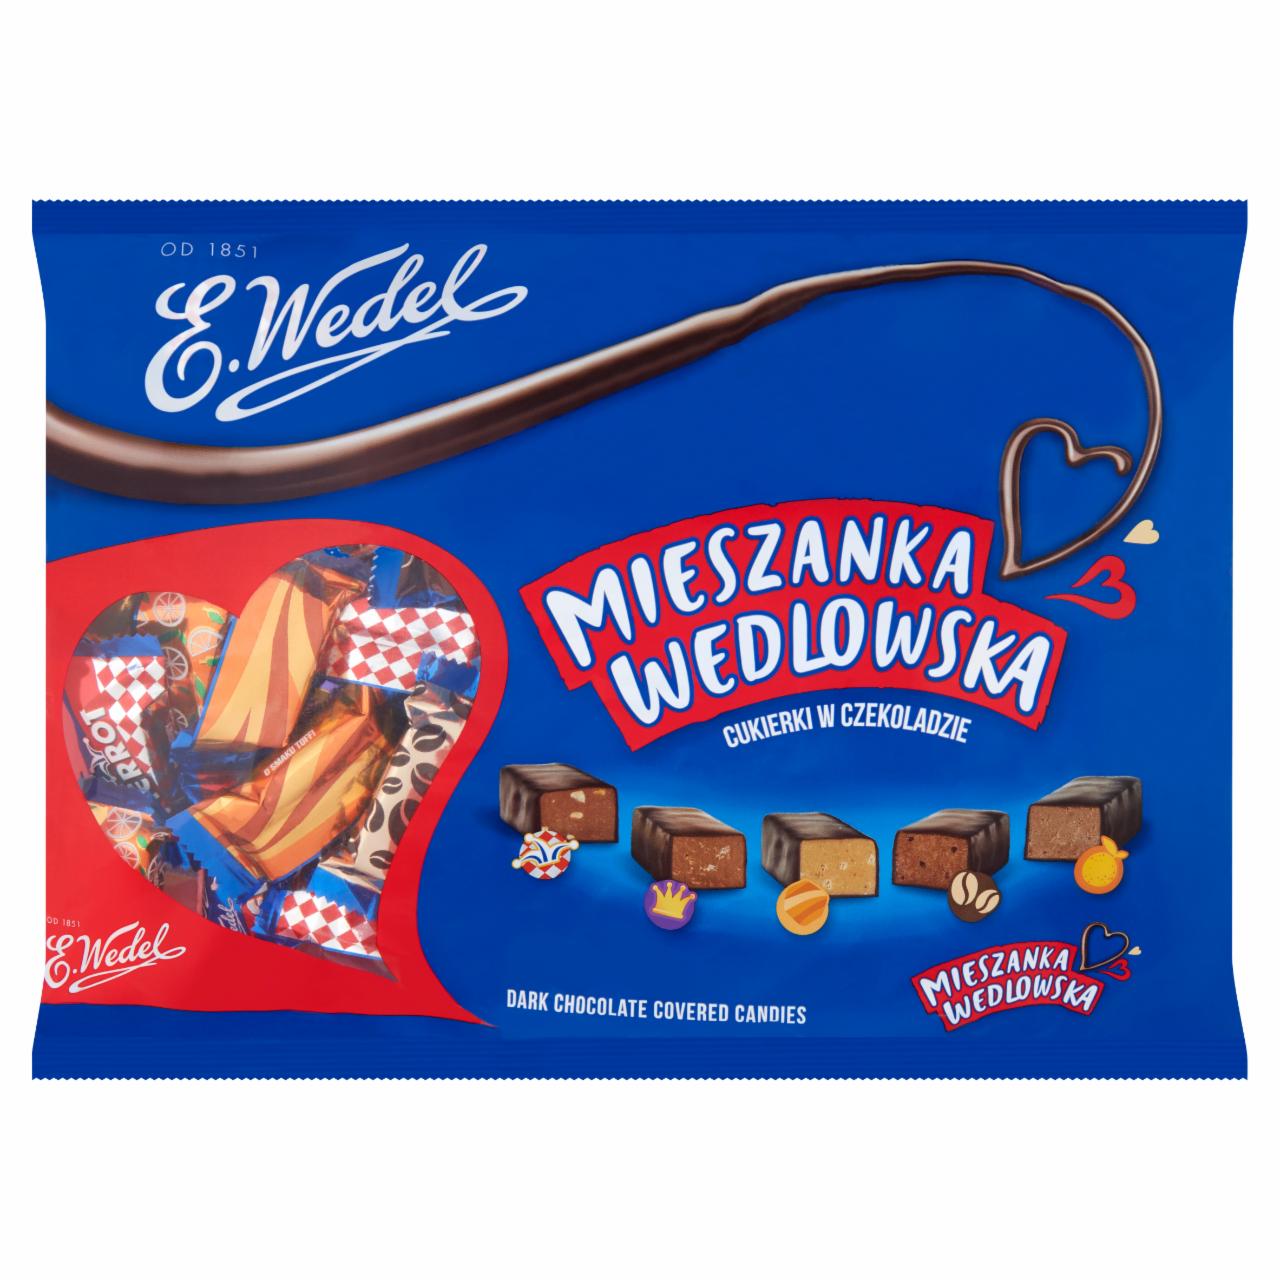 Zdjęcia - E. Wedel Mieszanka Wedlowska Cukierki w czekoladzie deserowej 1 kg